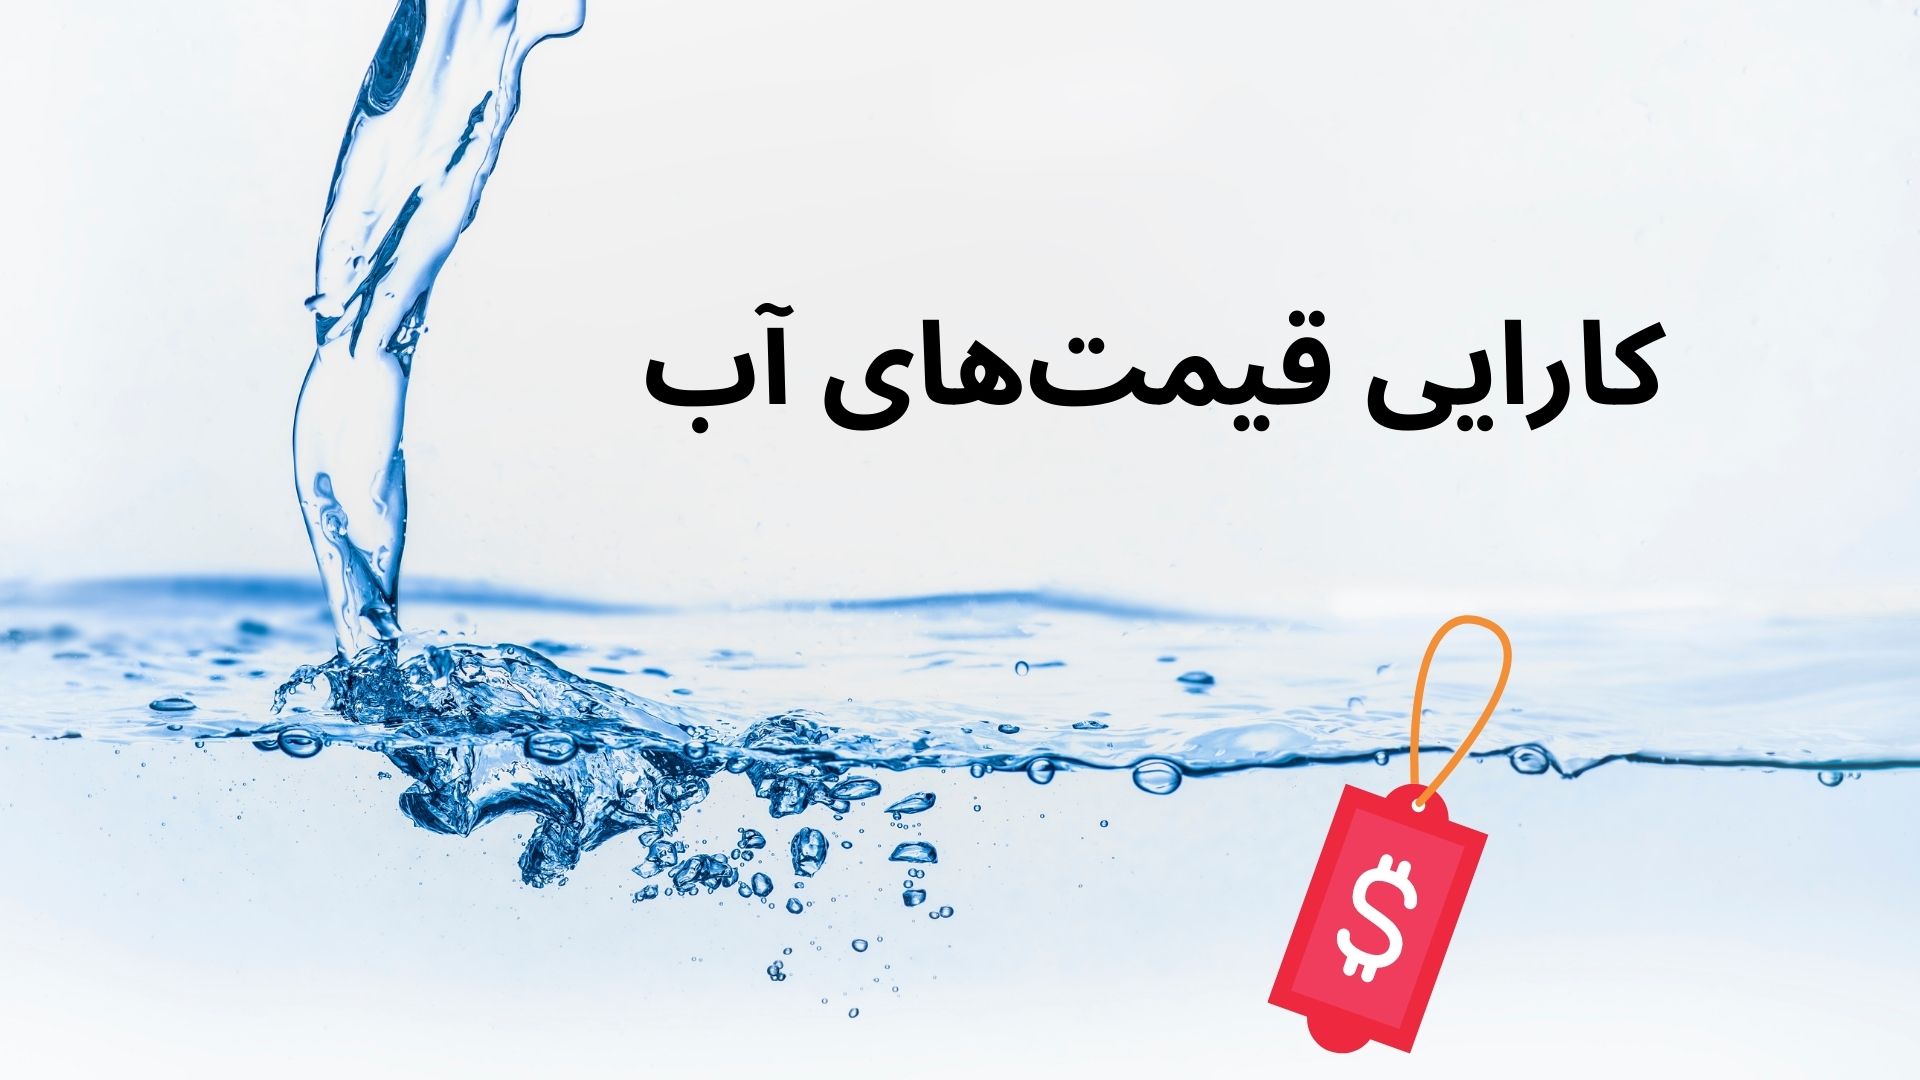 water price efficiency